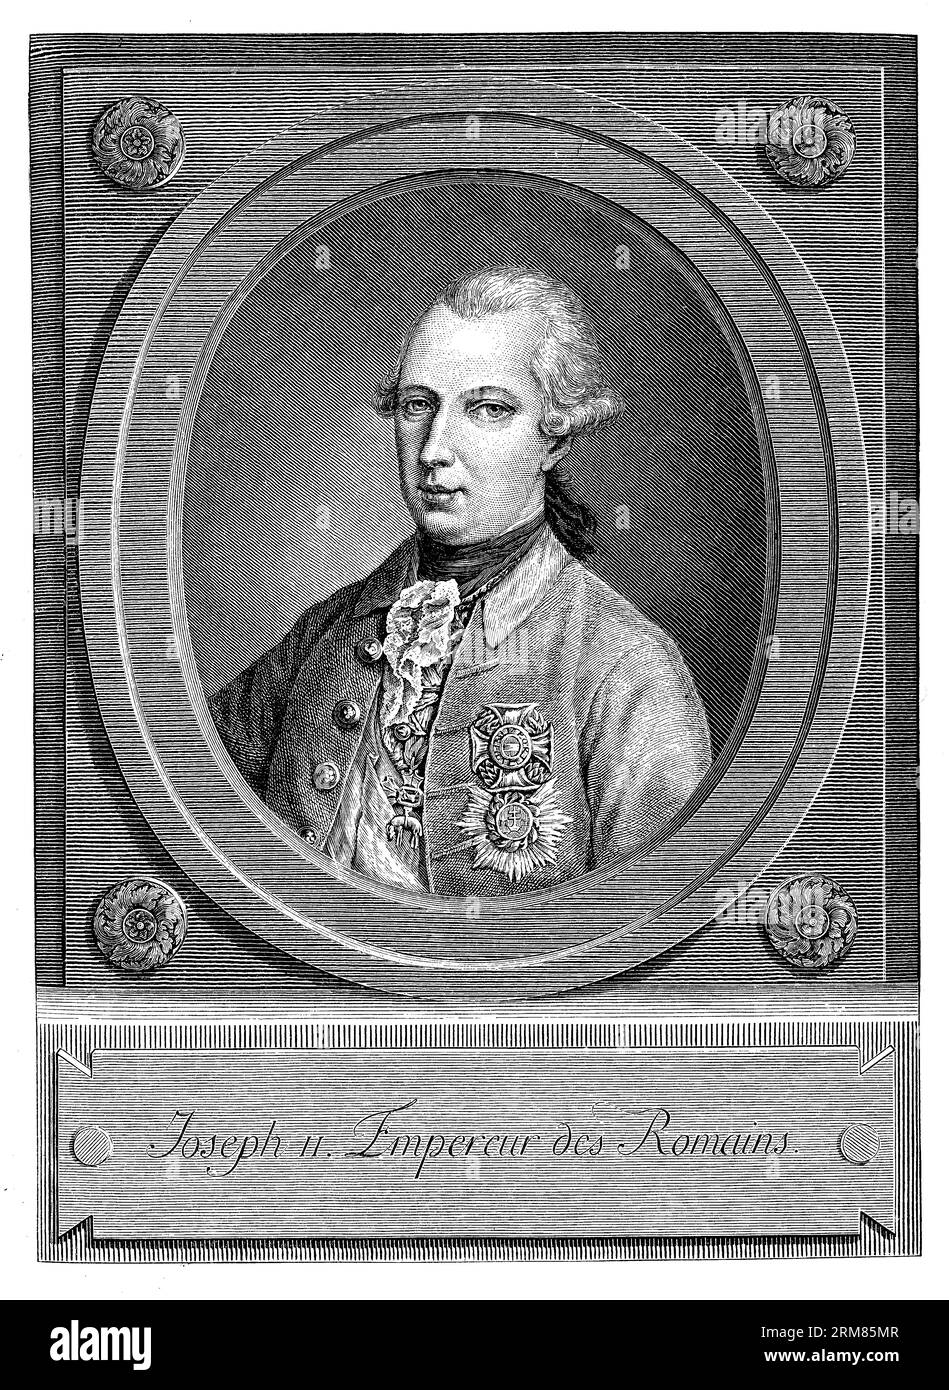 Giuseppe II (1741-1790) fu un imperatore del Sacro Romano Impero dal 1765 fino alla sua morte. Fu una figura chiave dell'Illuminismo e noto per le sue ampie riforme volte a modernizzare l'Impero asburgico Foto Stock